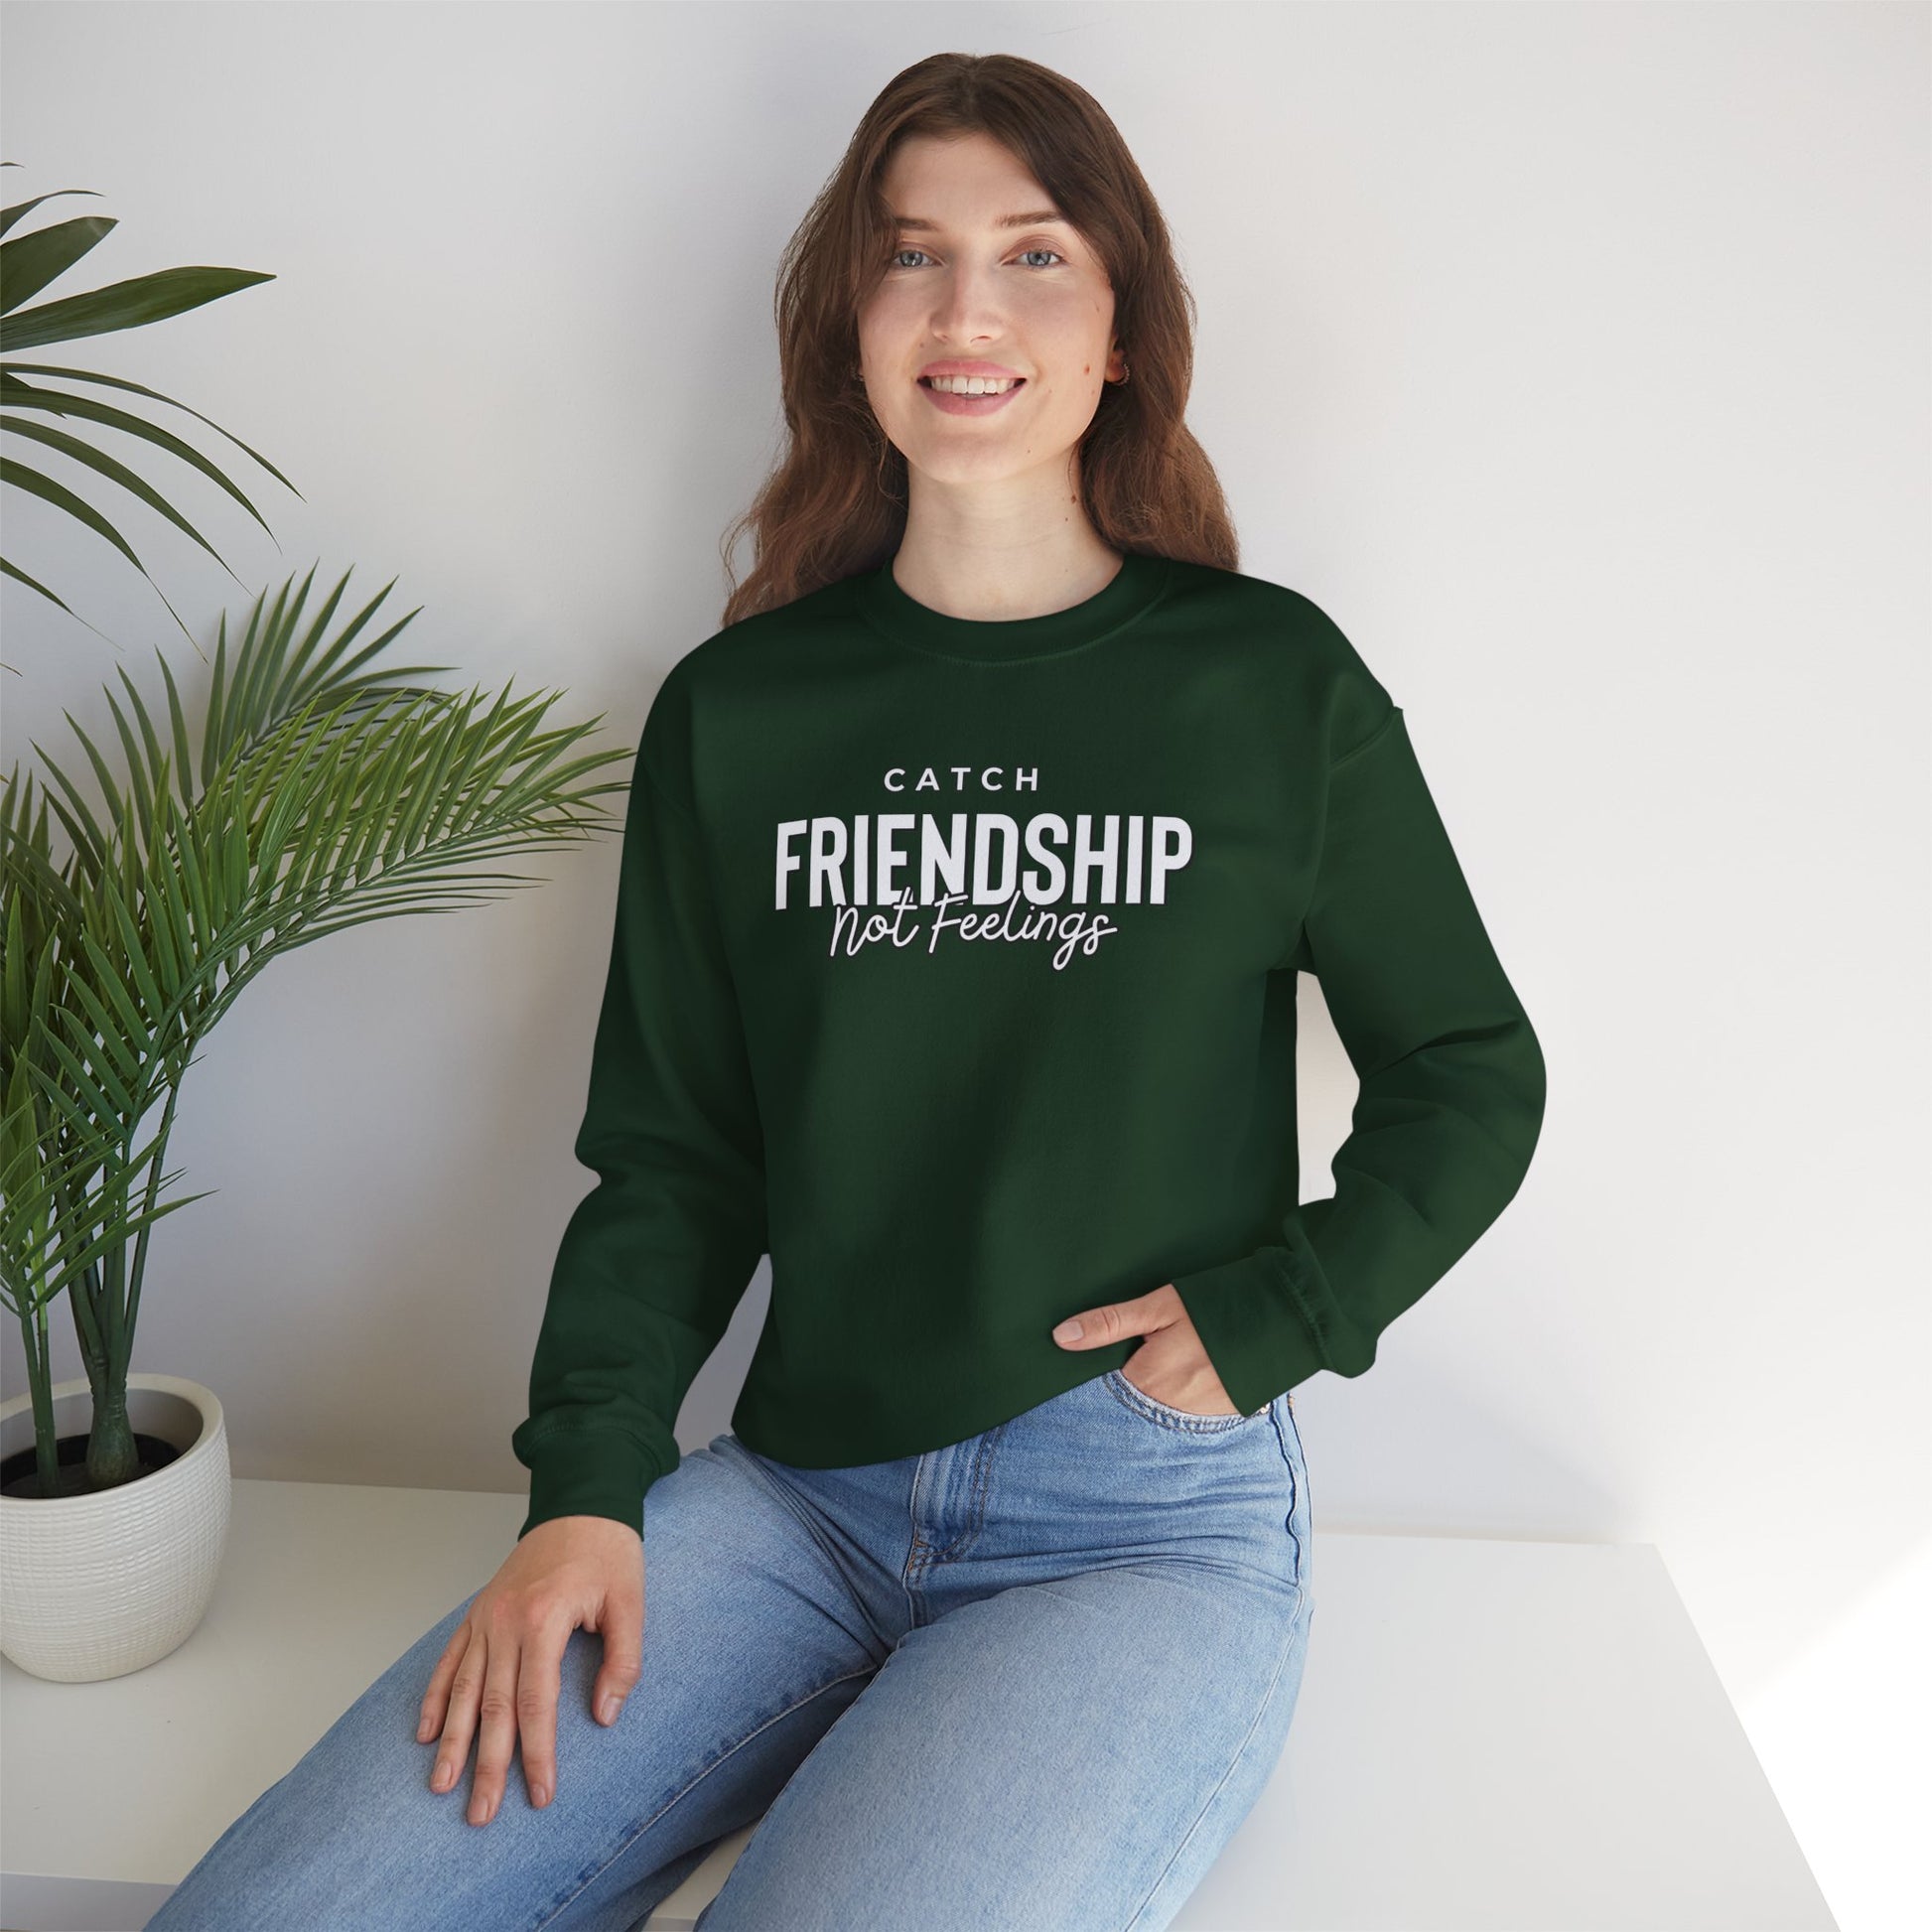 Catch Friendship Not Feelings Heavy Blend™ Crewneck Sweatshirt Forest Green